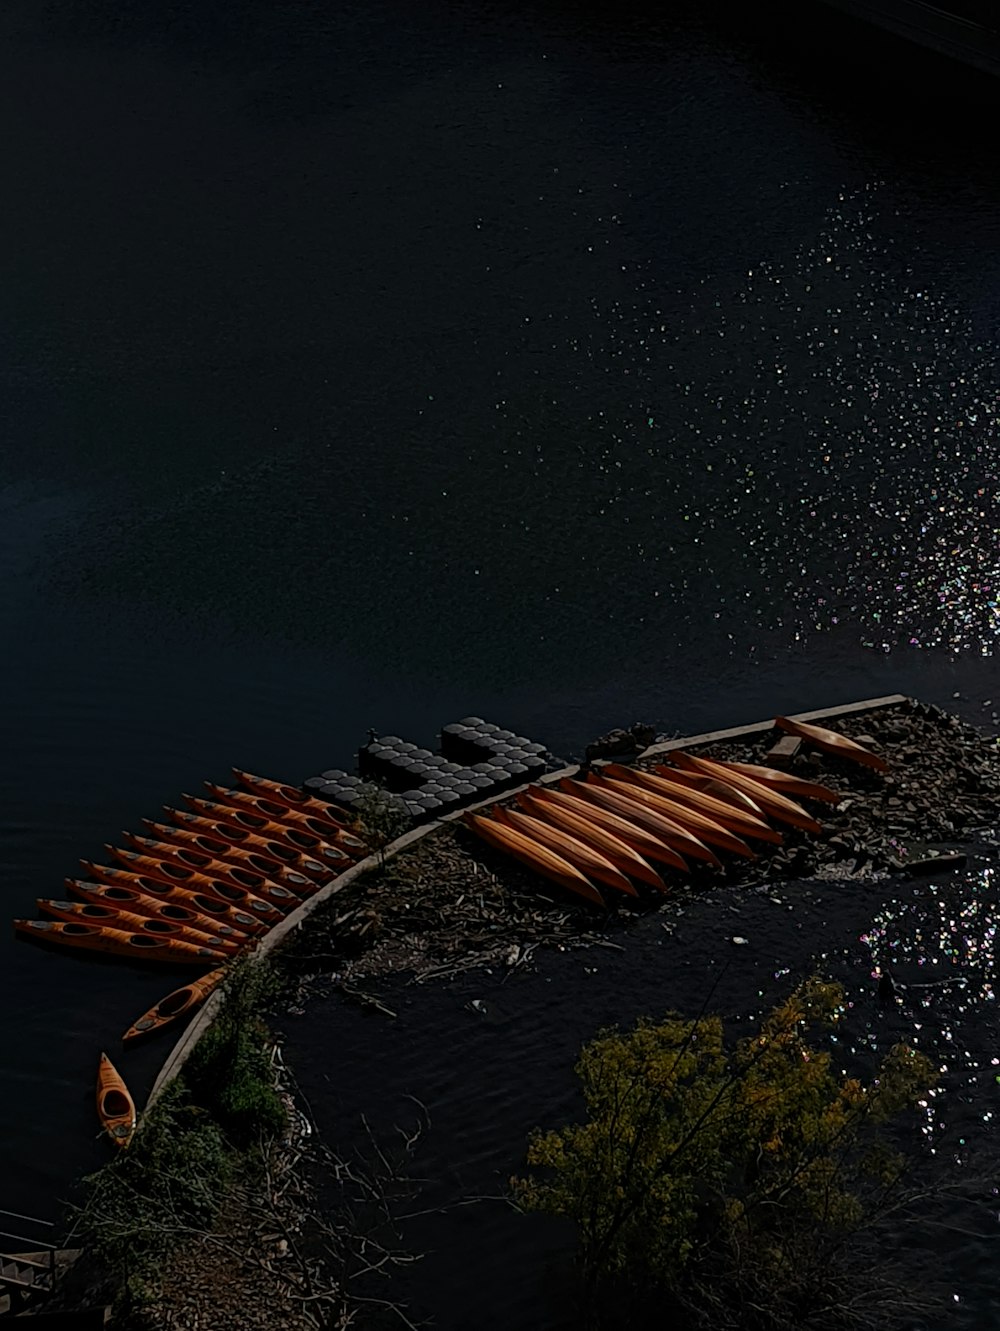 eine Reihe von Kanus am Ufer eines Sees